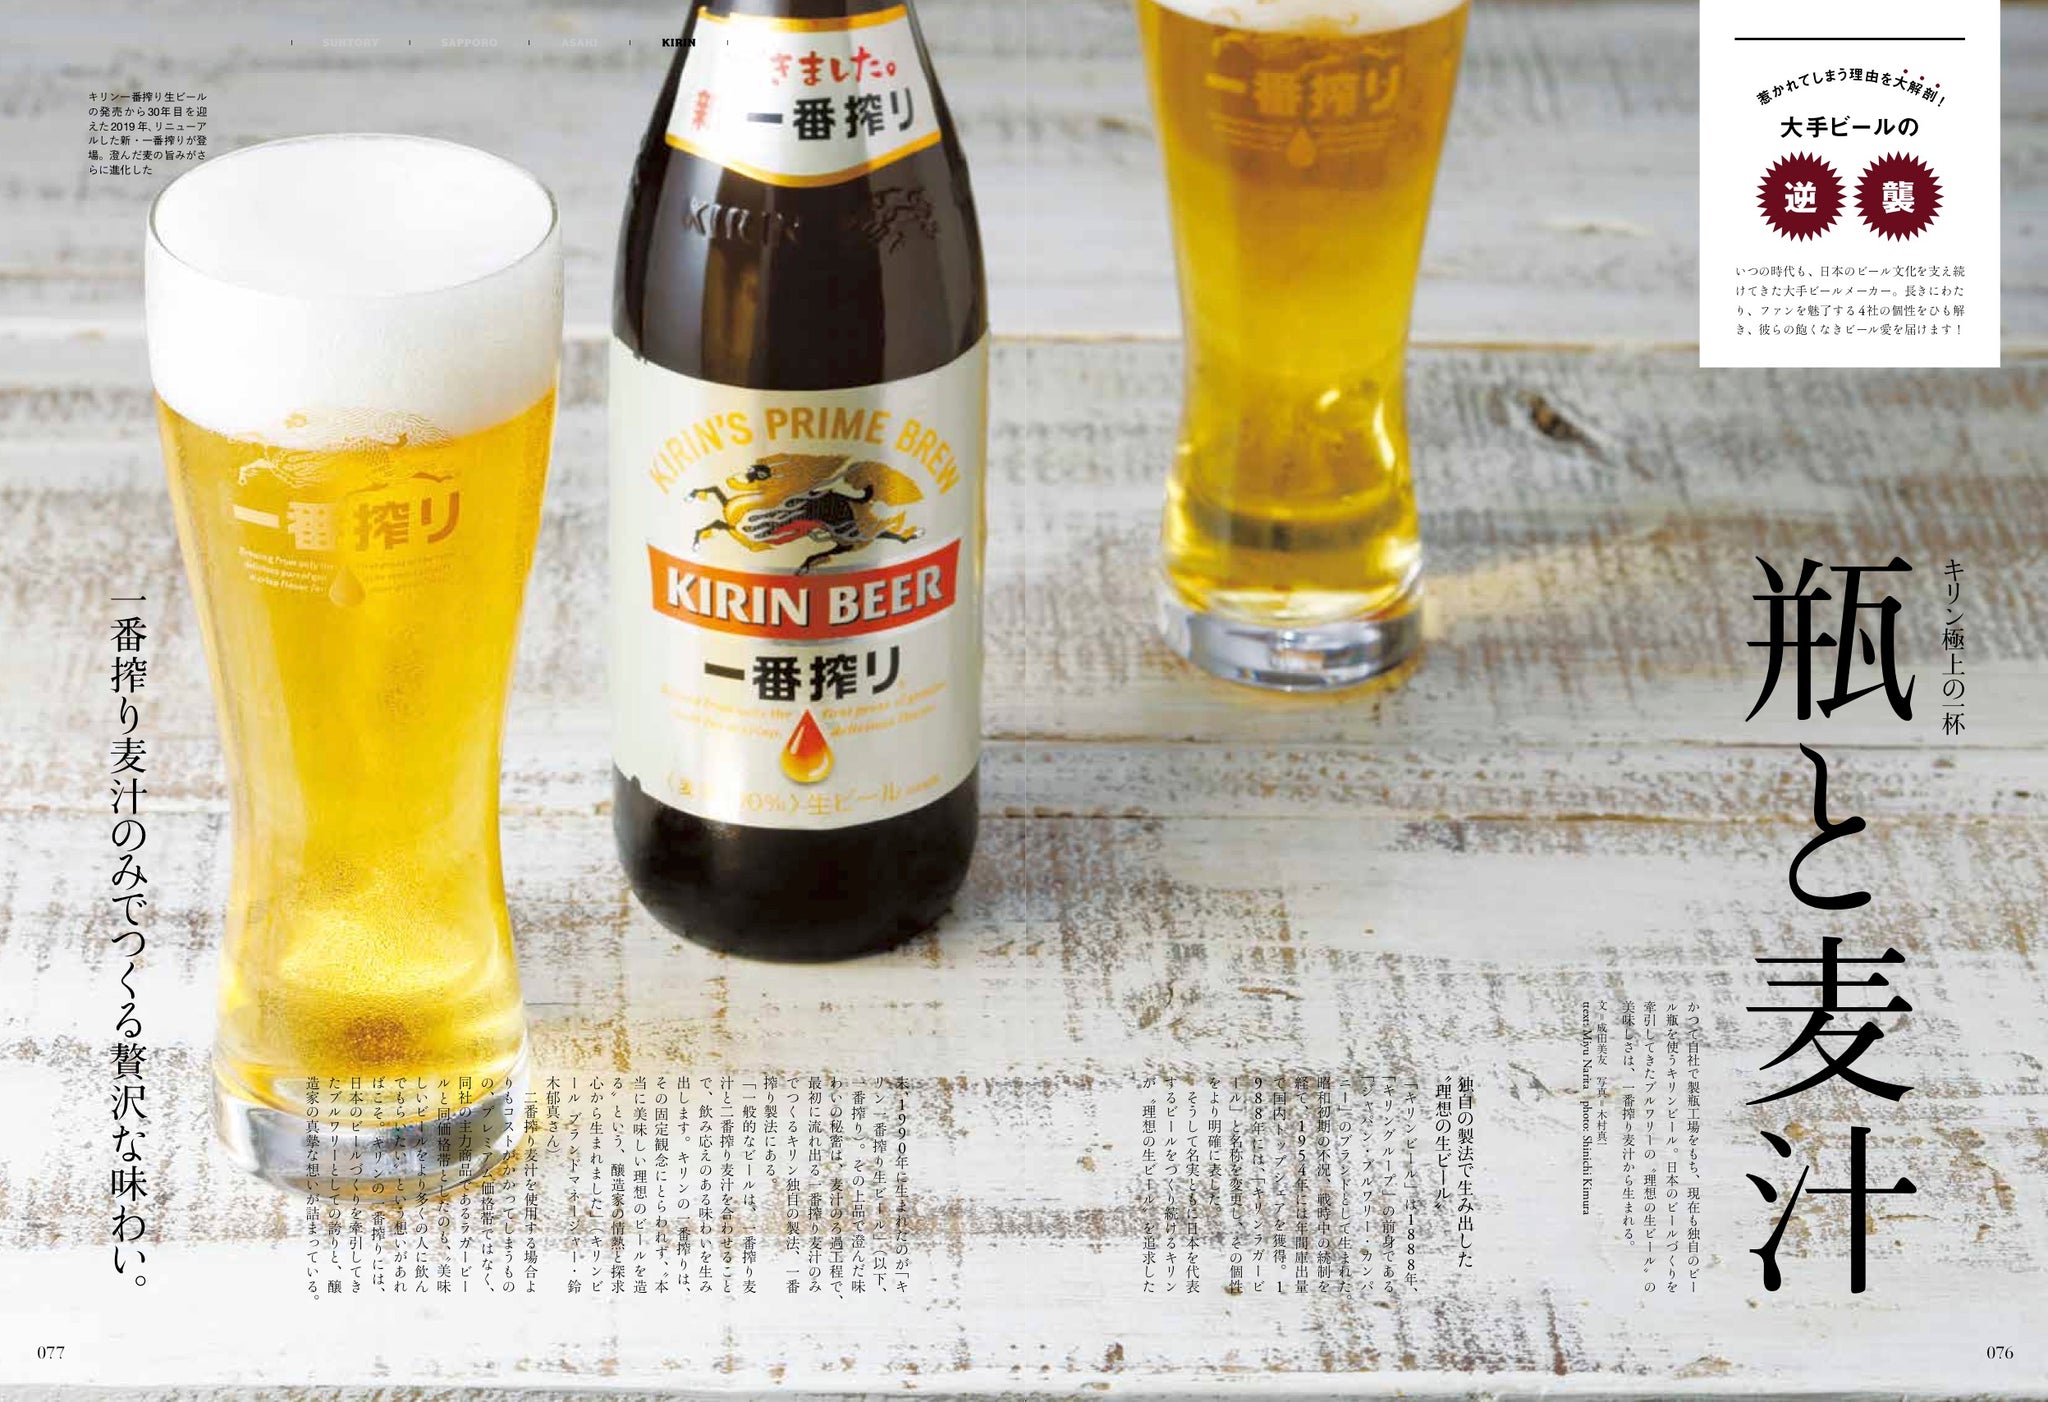 Discover Japan 19年7月号 うまいビールはどこにある 19 6 6発売